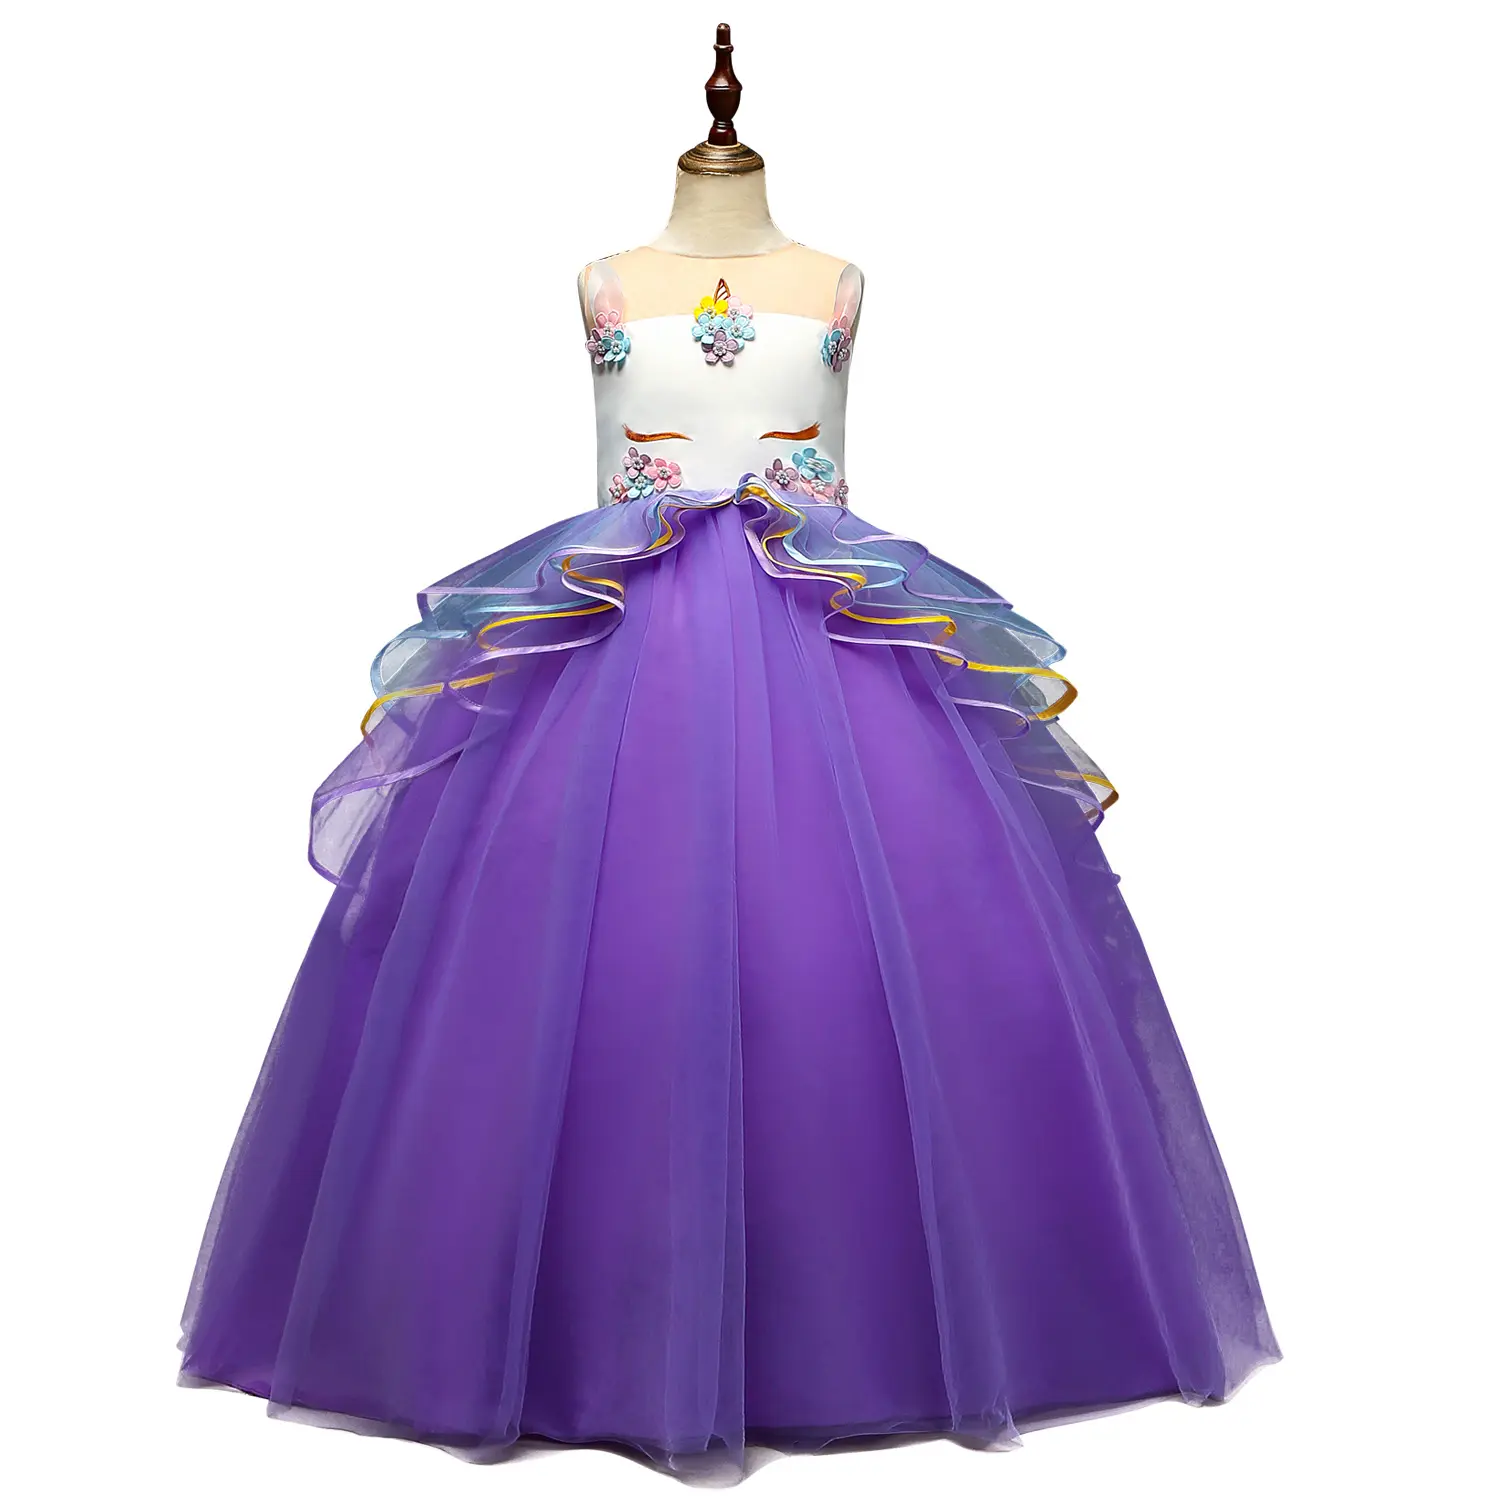 Новинка 88700, длинное платье принцессы, дизайн, единорог, большая девочка, новейшие стильные детские Свадебные платья макси для девочек